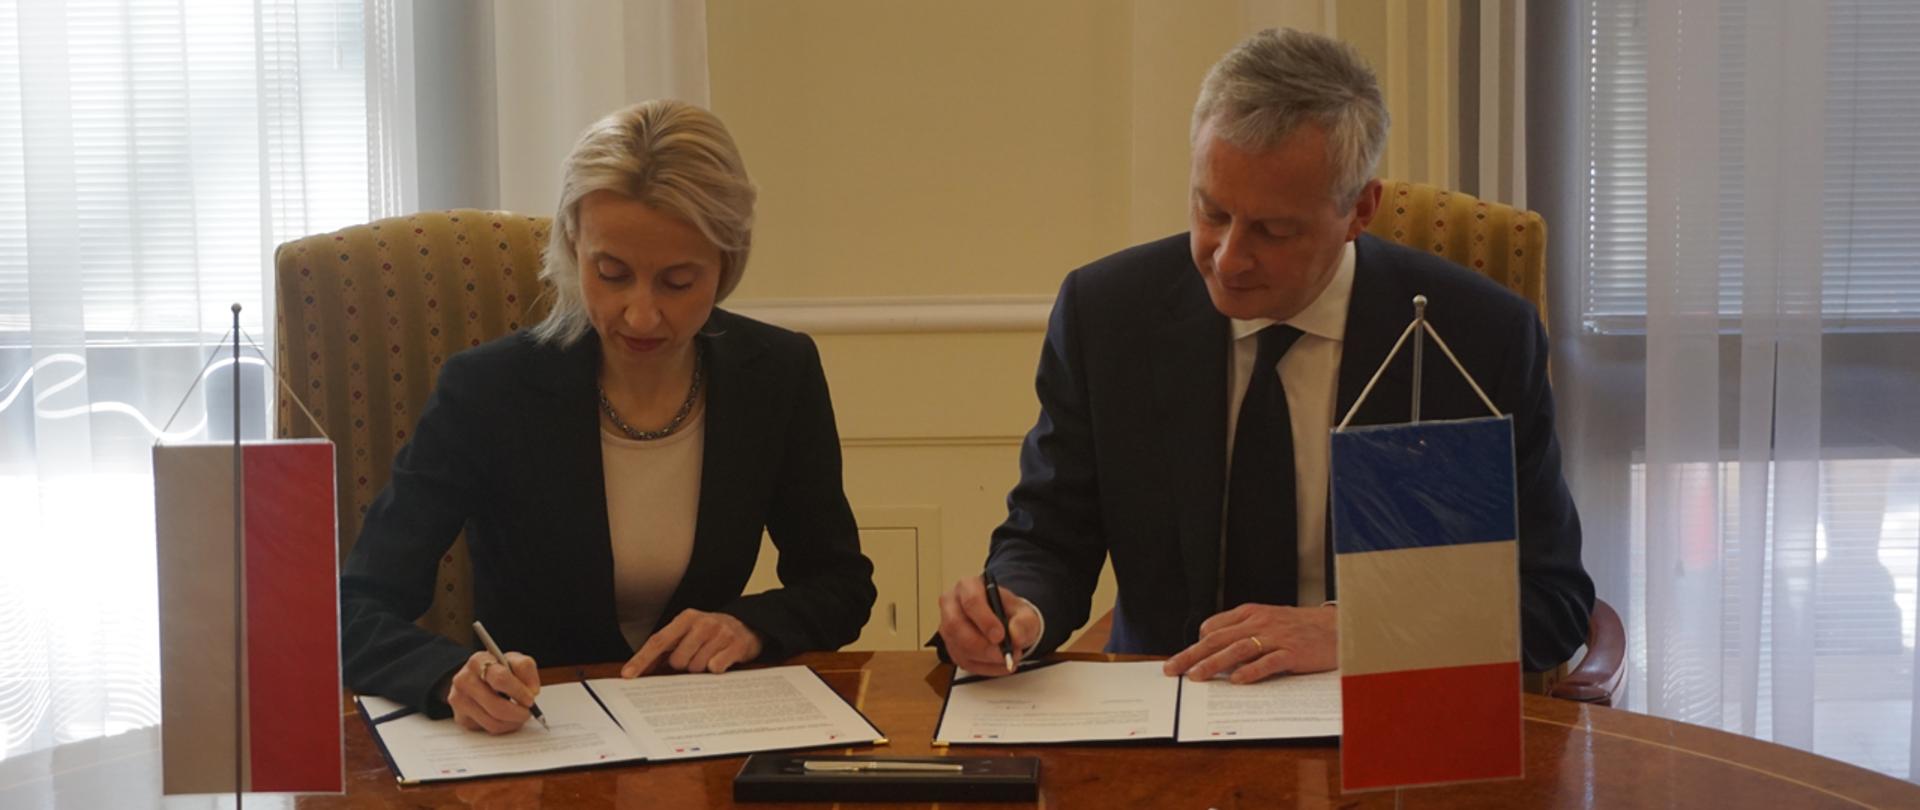 Minister finansów Teresa Czerwińska i minister gospodarki i finansów Bruno Le Maire podpisują deklarację o współpracy podatkowej przy flagach Polski i Francji